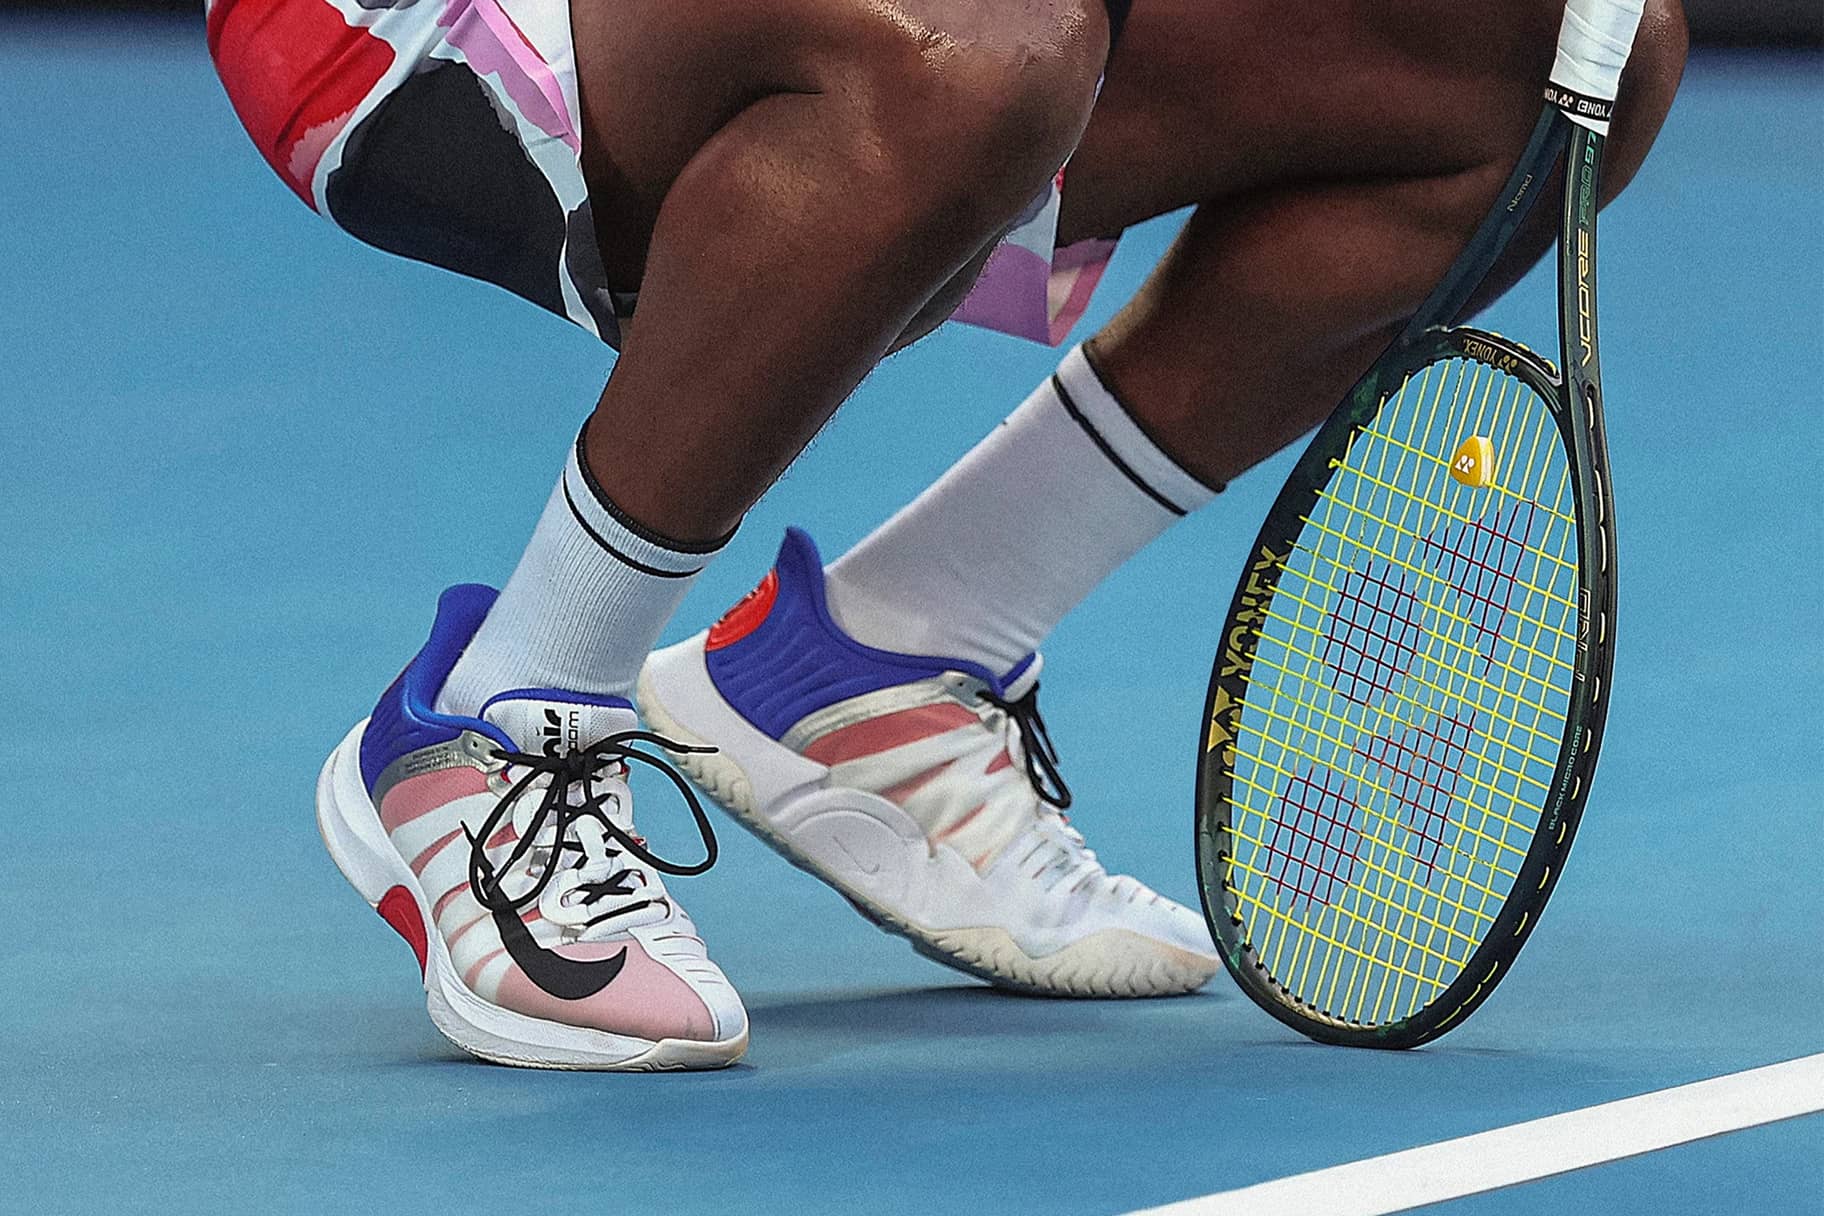 Les meilleures chaussures Nike pour jouer au tennis sur une surface dure